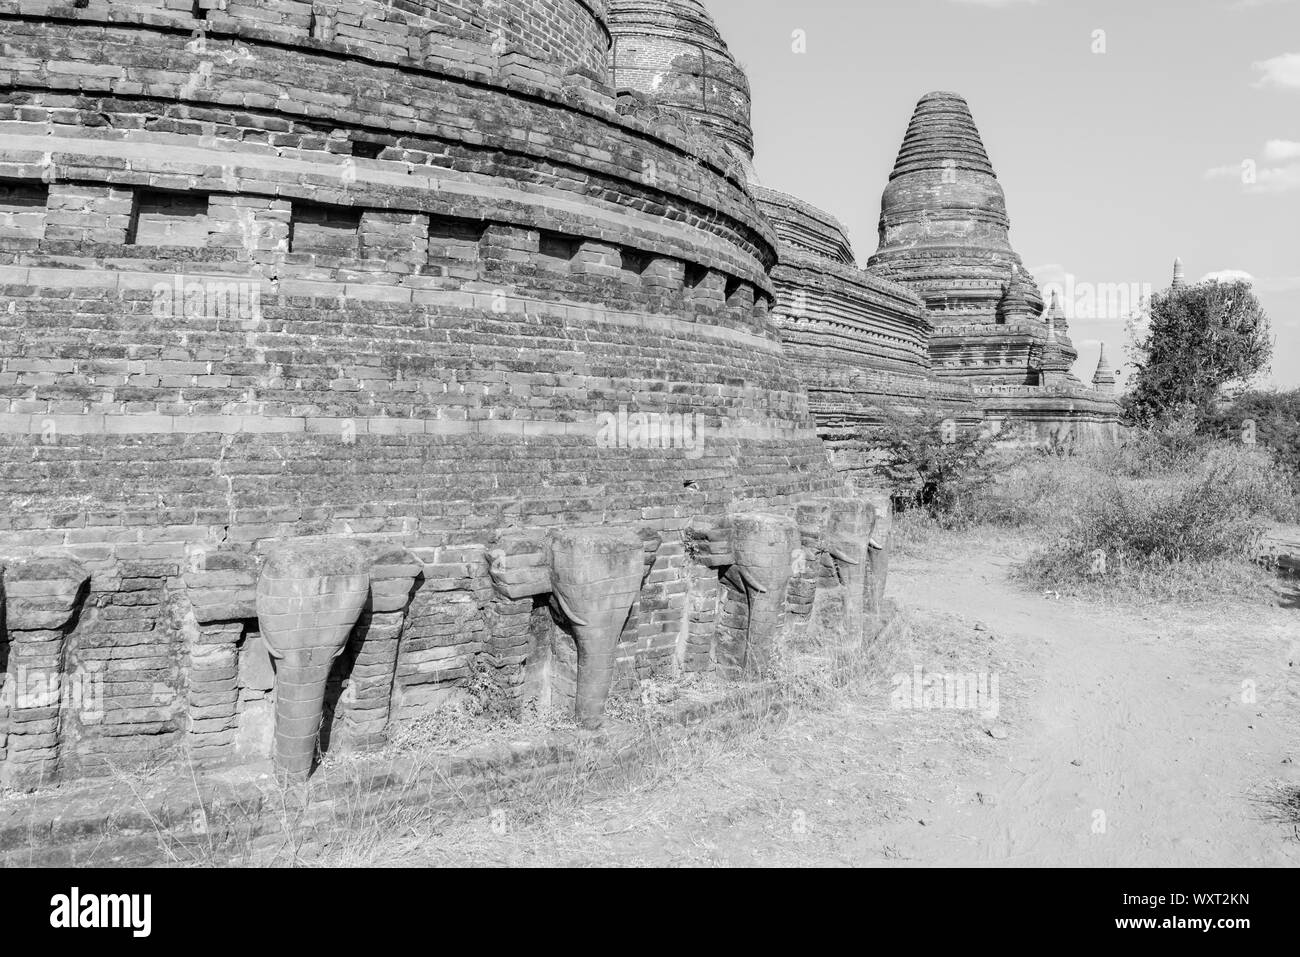 Noir et blanc photo de monastère en brique, beaucoup de belles pagodes situé dans le parc archéologique de Bagan, Myanmar Banque D'Images